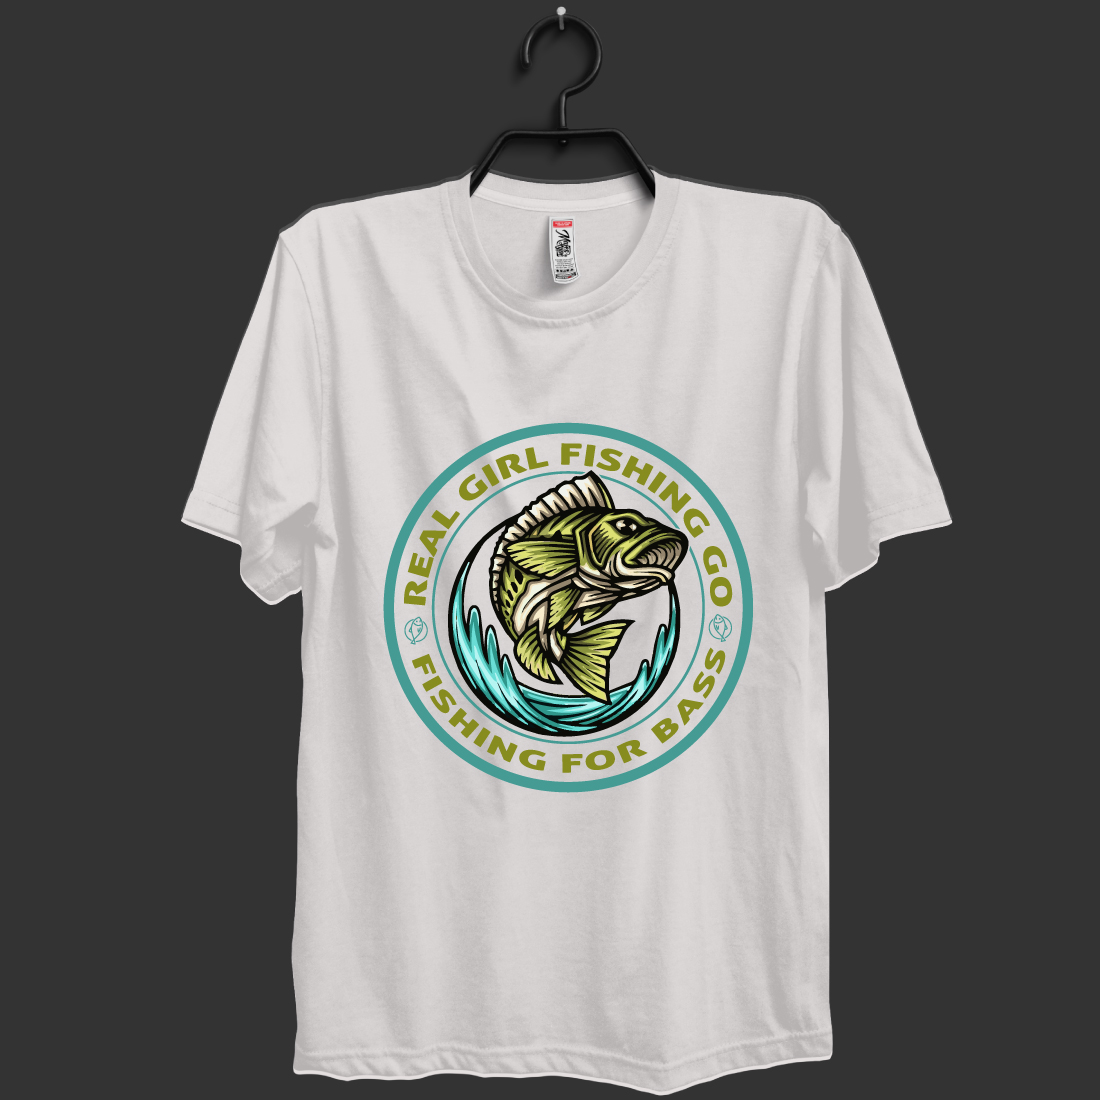 Fishing T-shirt Design Bundle - MasterBundles